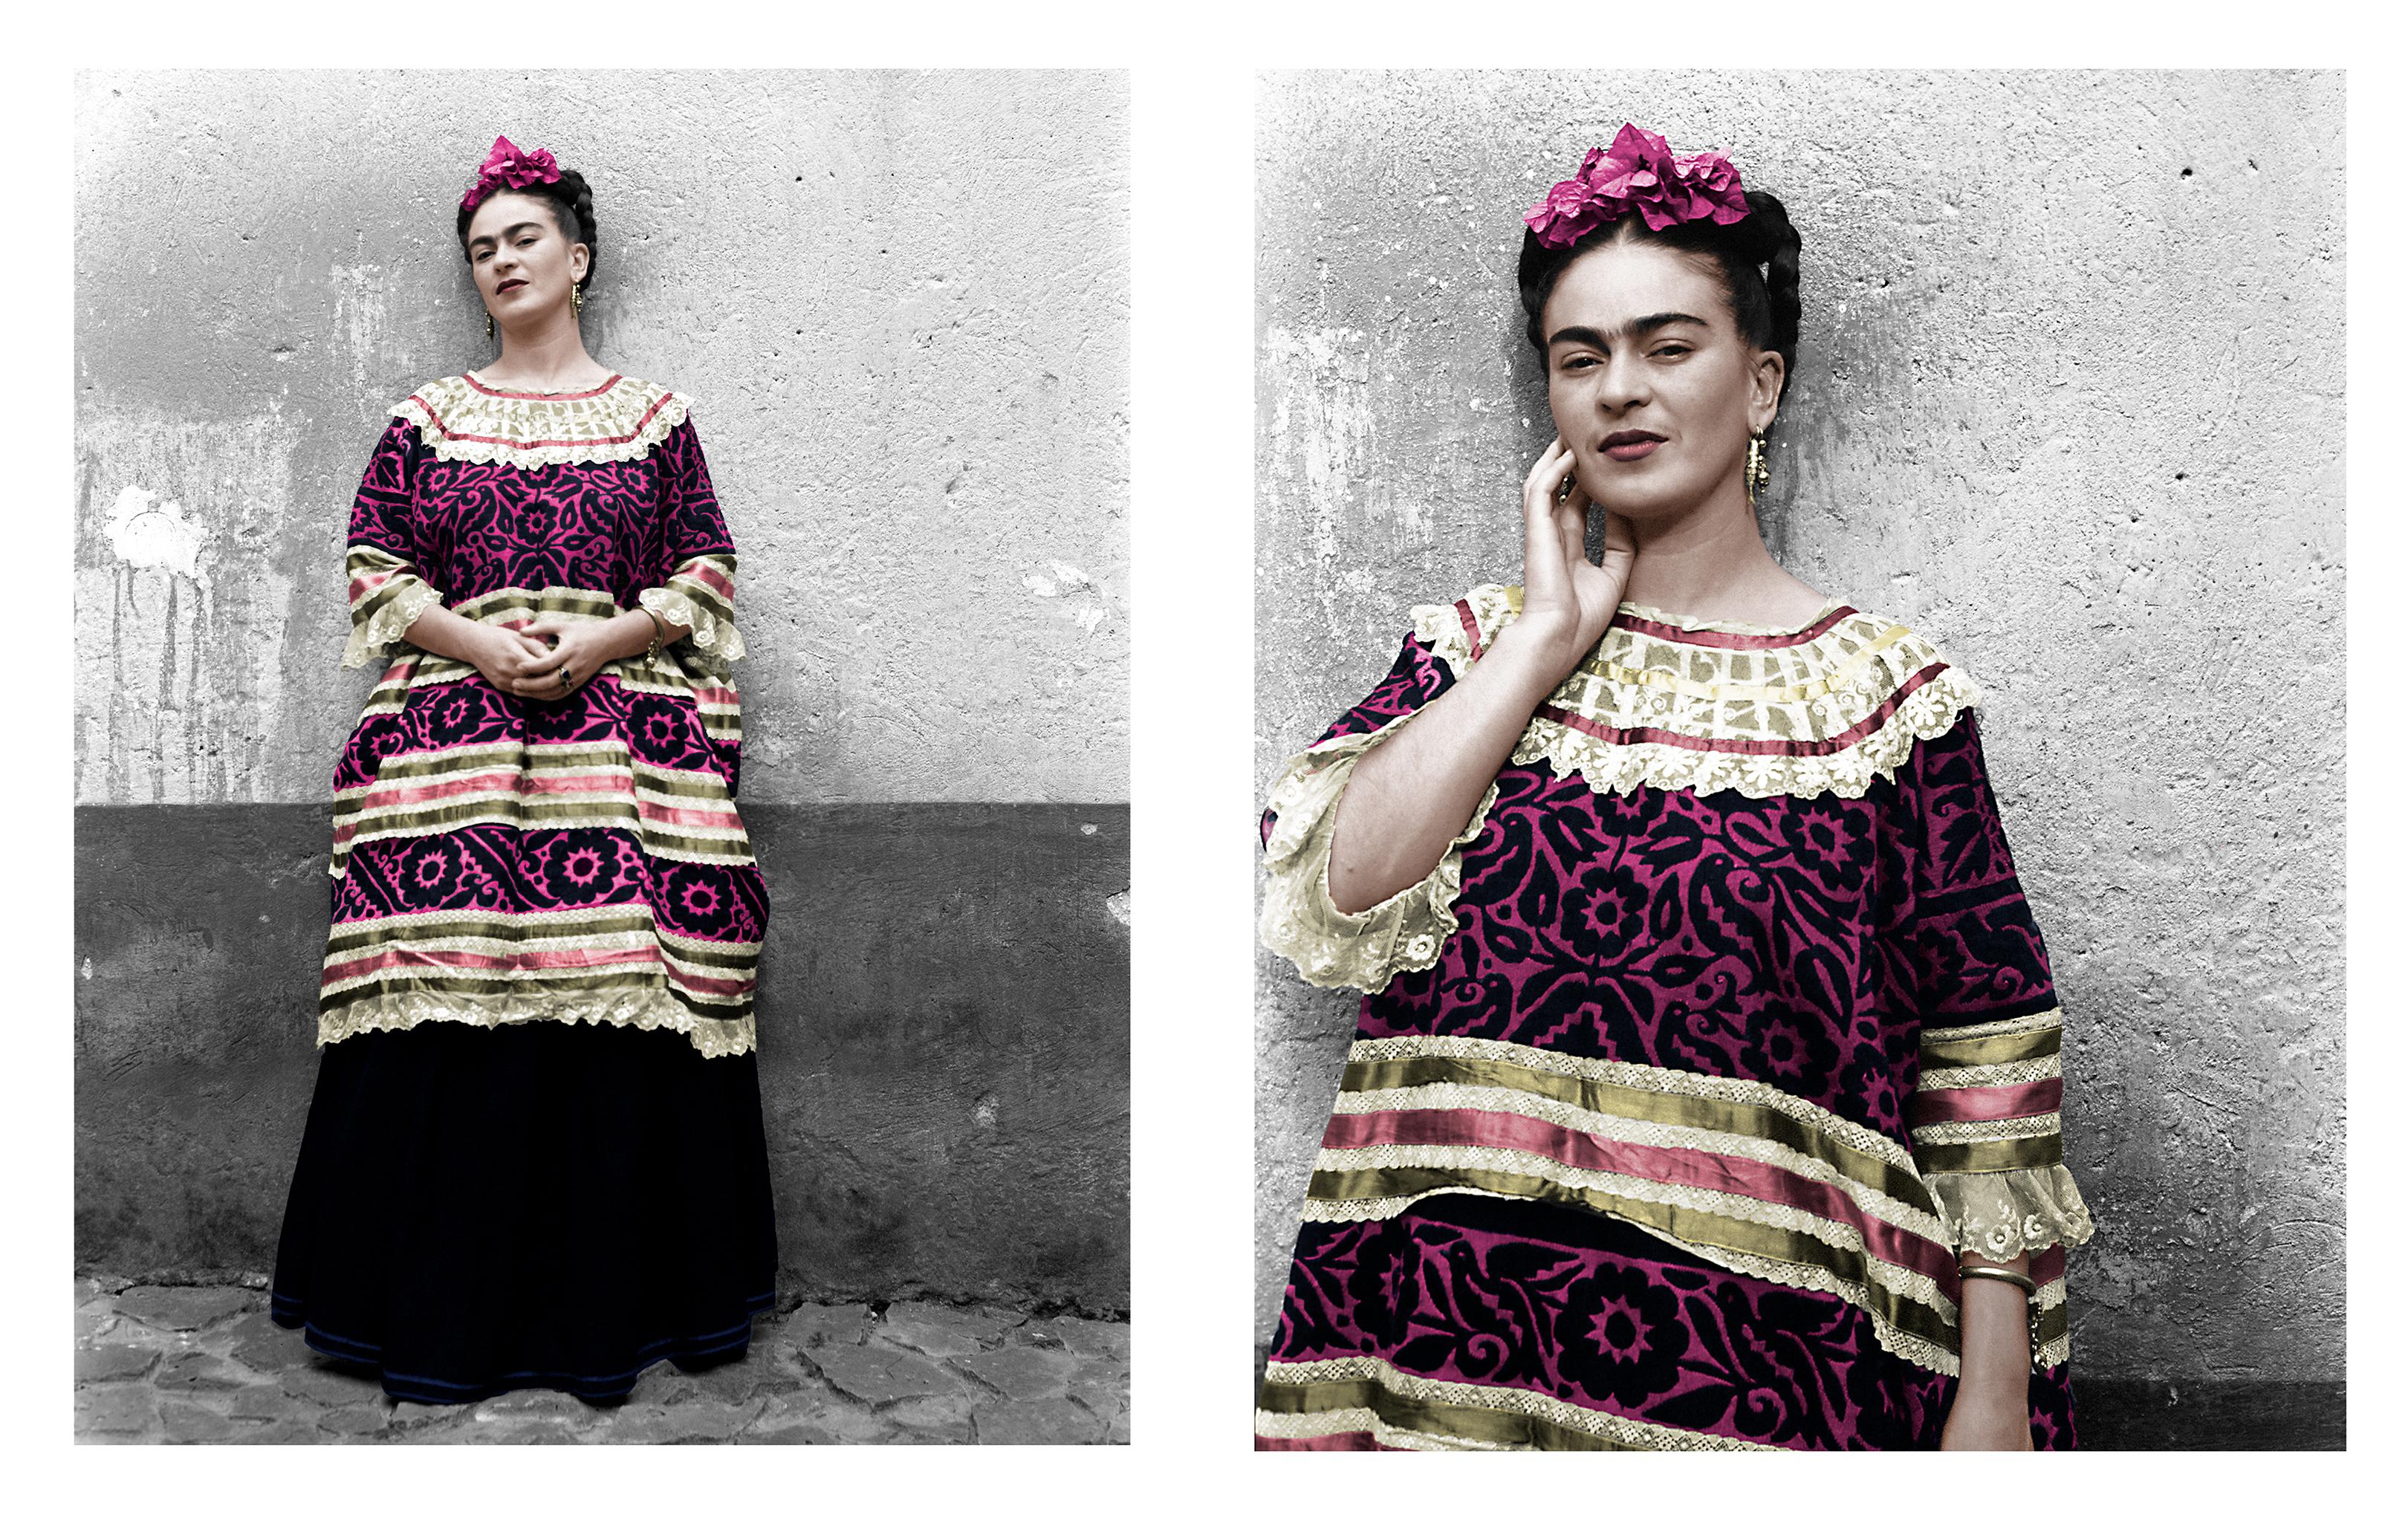 Leo Matiz Color Photograph - Frida Kahlo in the Blue House (Diptych) Coyoacán, Mexico. 1943. Color Portraits